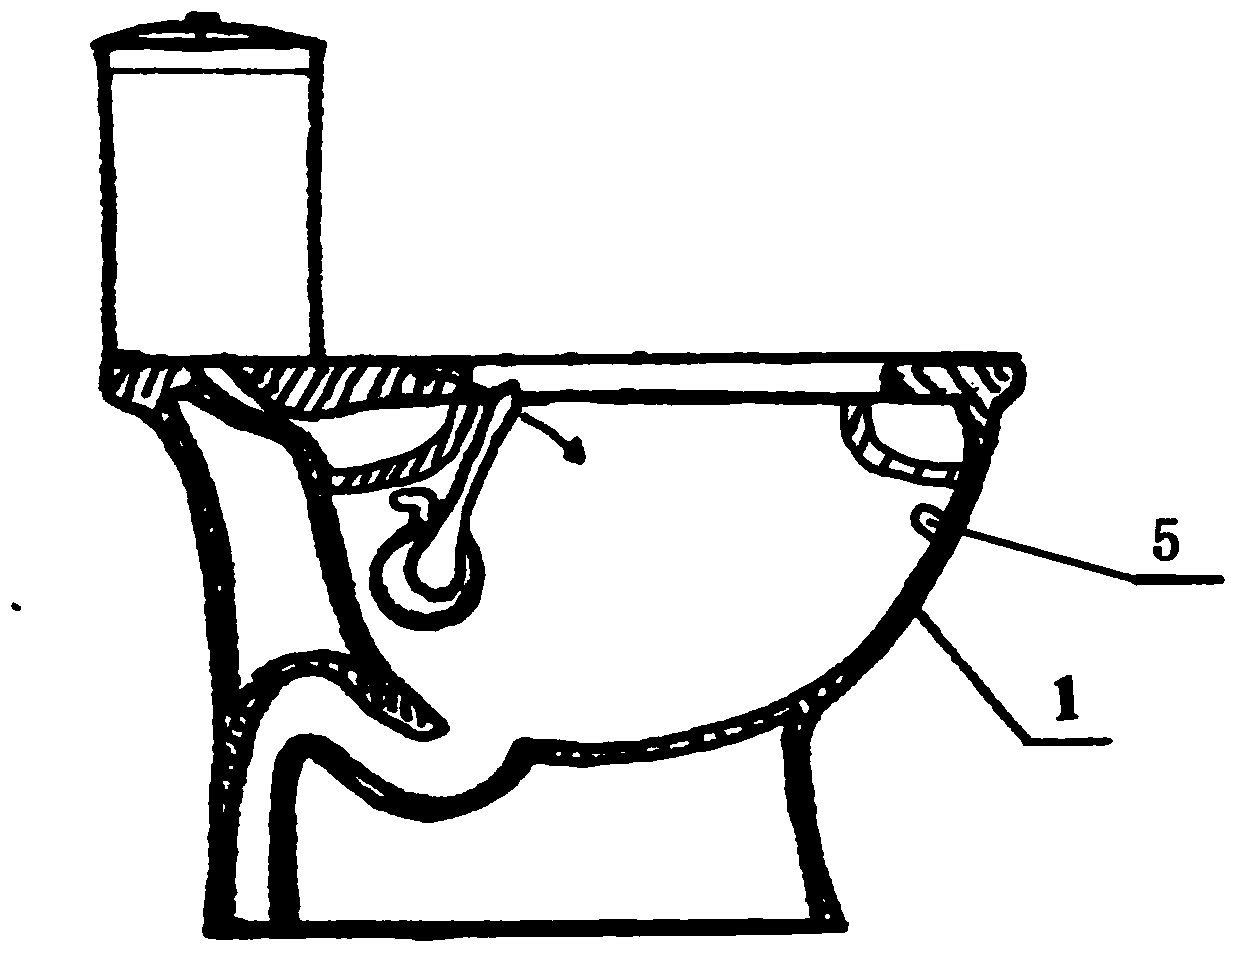 Water flushing valve